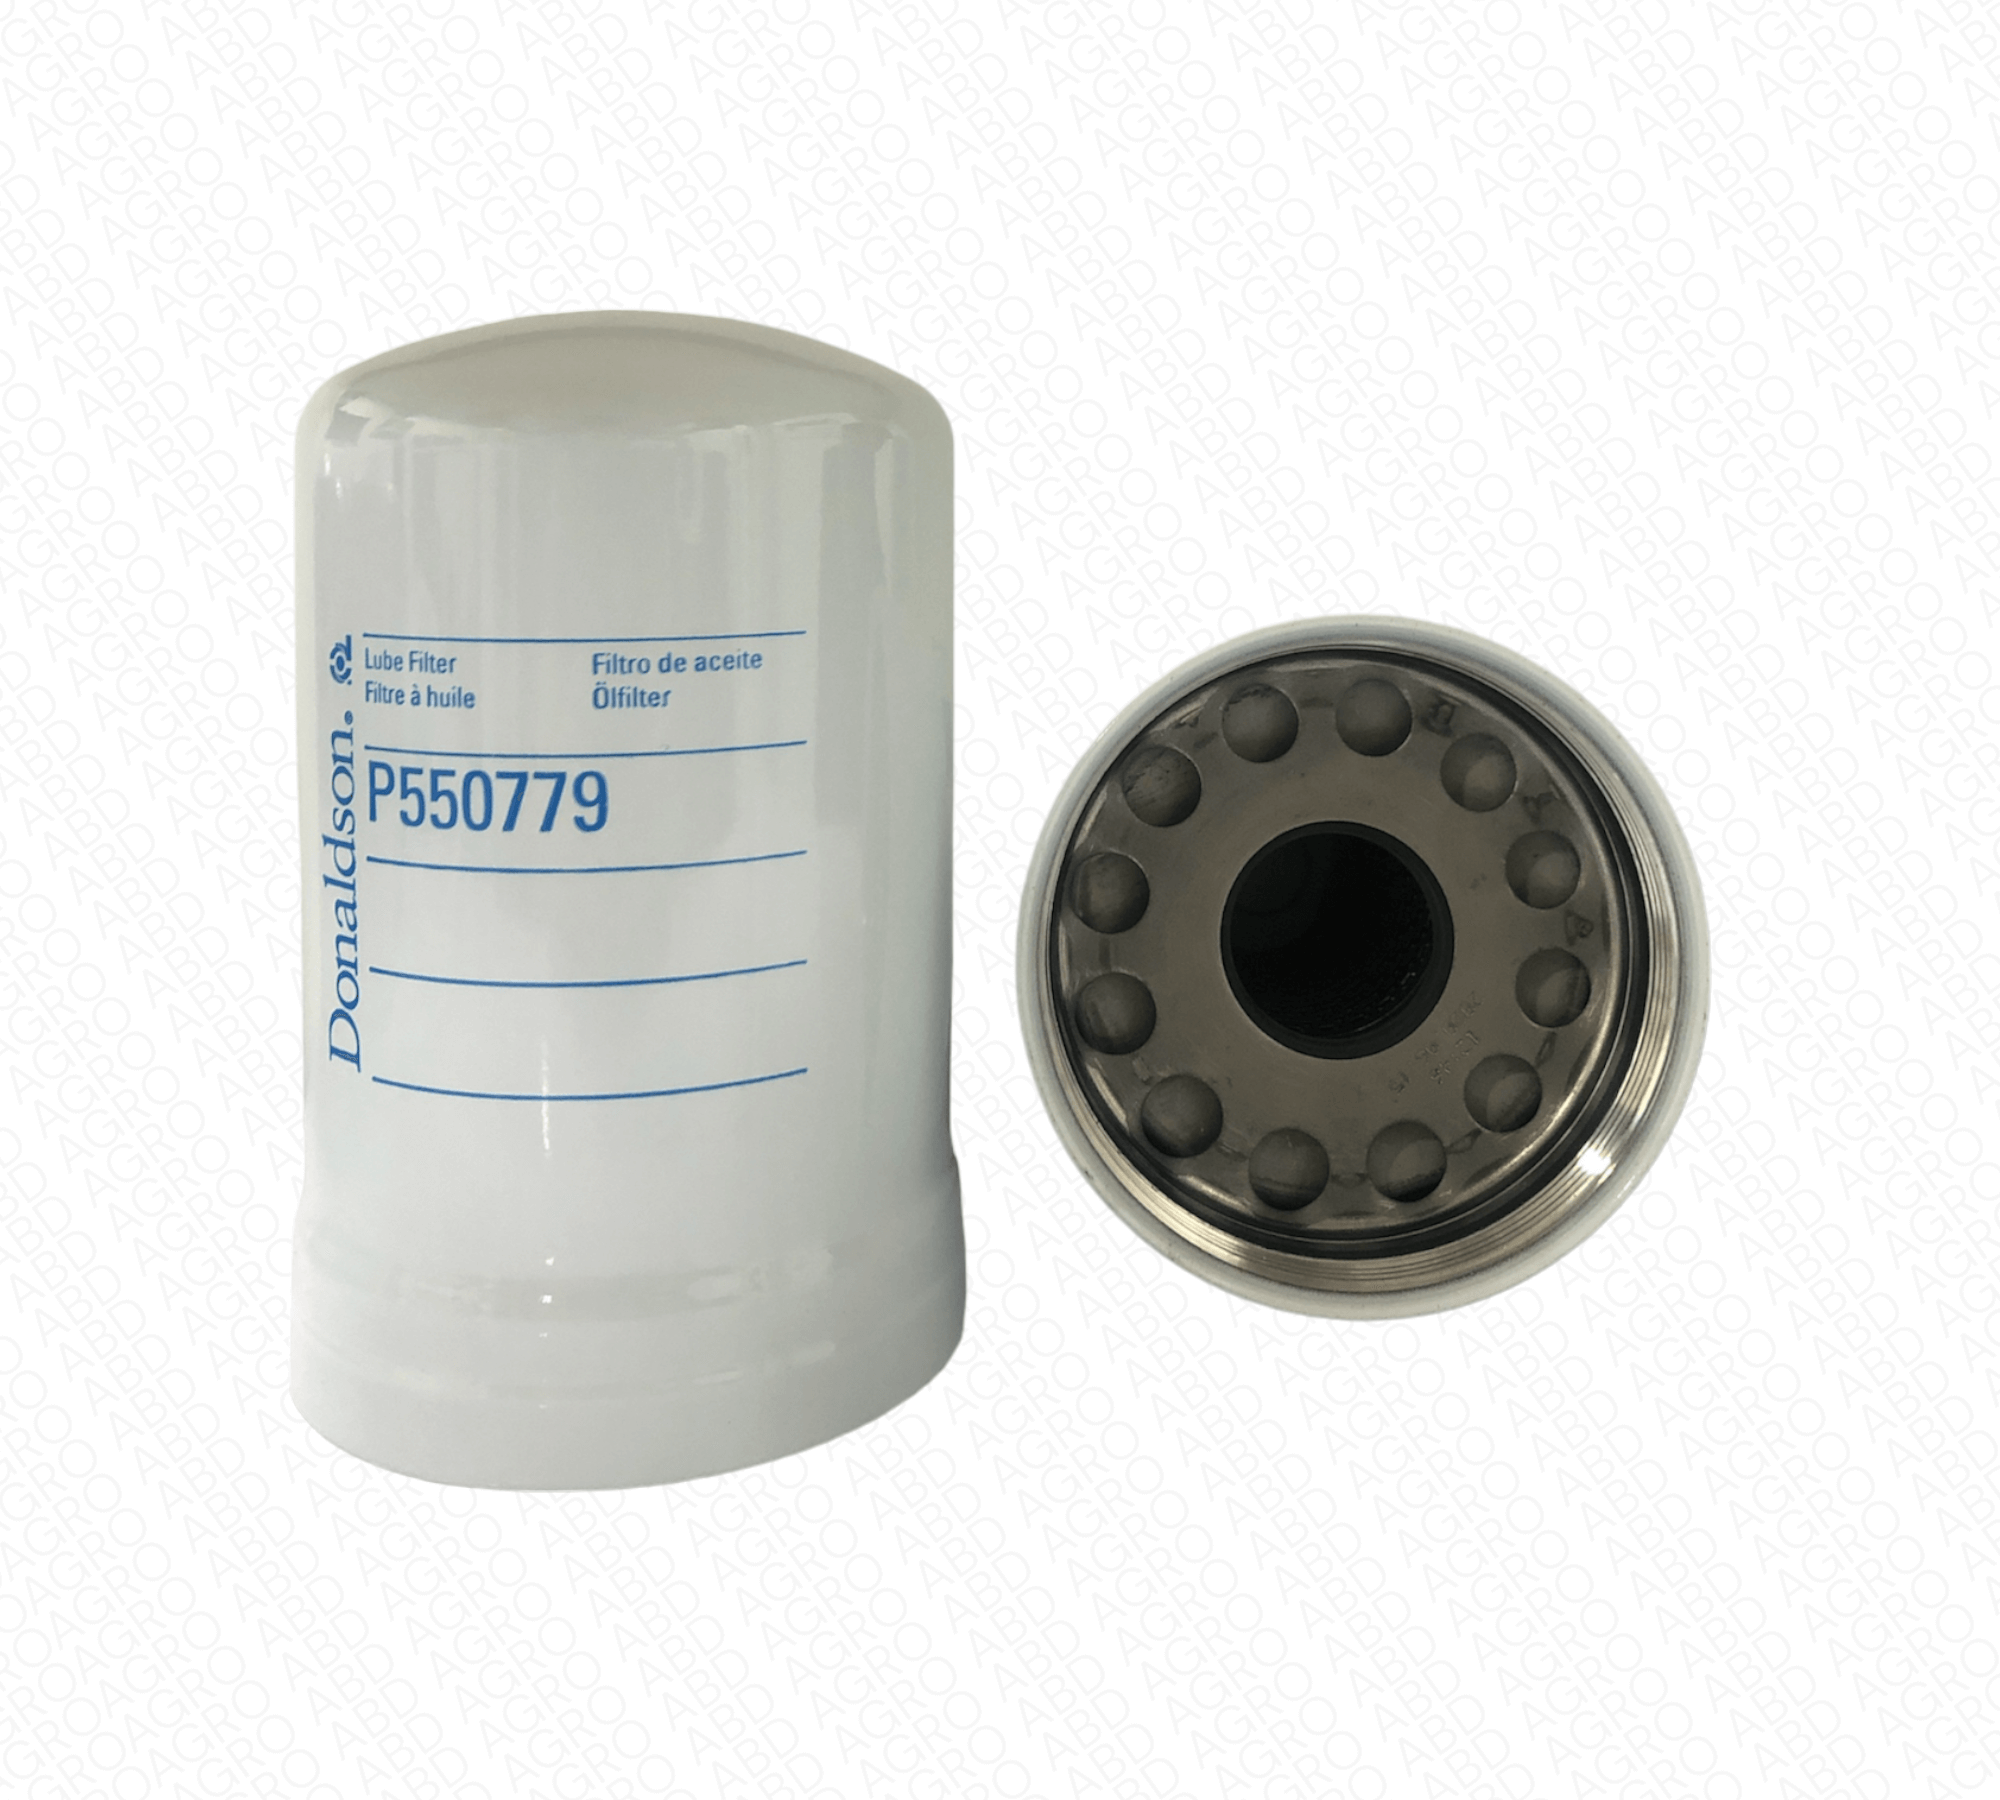 Filtro De Aceite, Flujo Completo Spin-On P550759 Donaldson